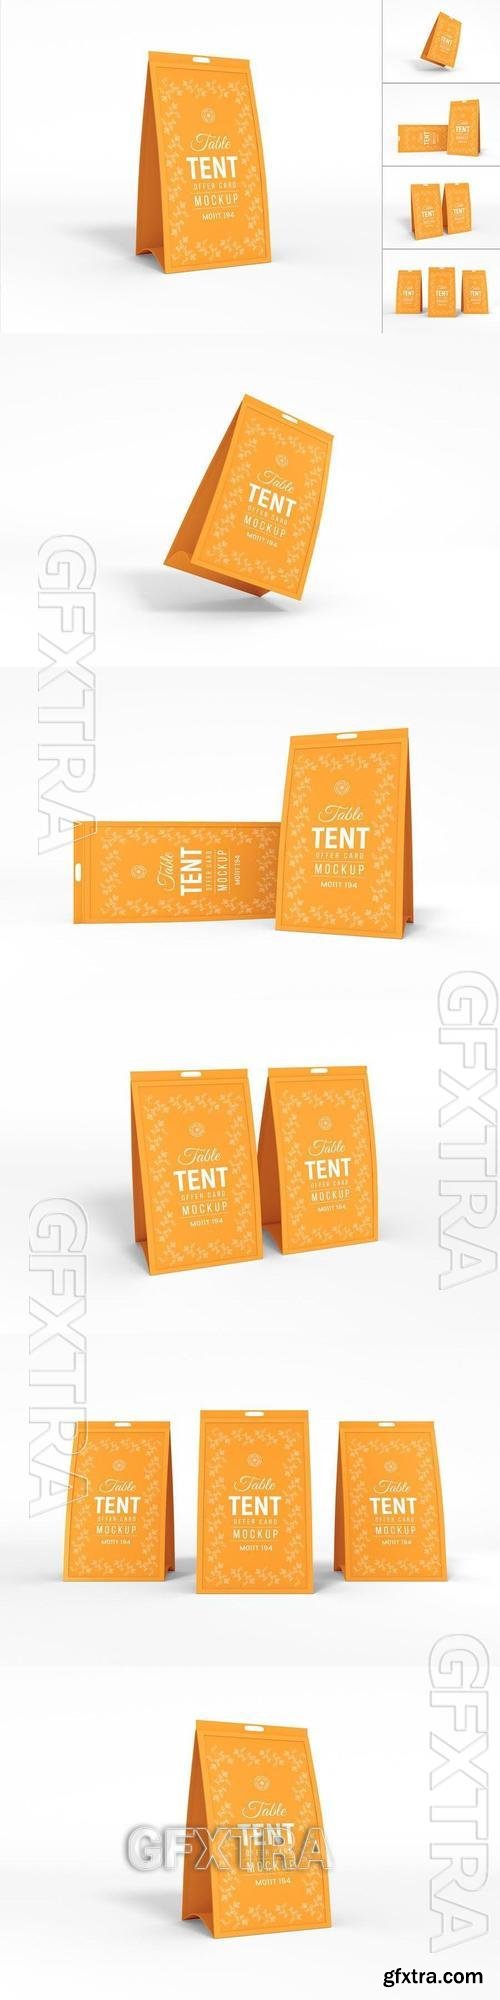 Paper Table Tent Offer Card Branding Mockup Set 2V4FTVQ